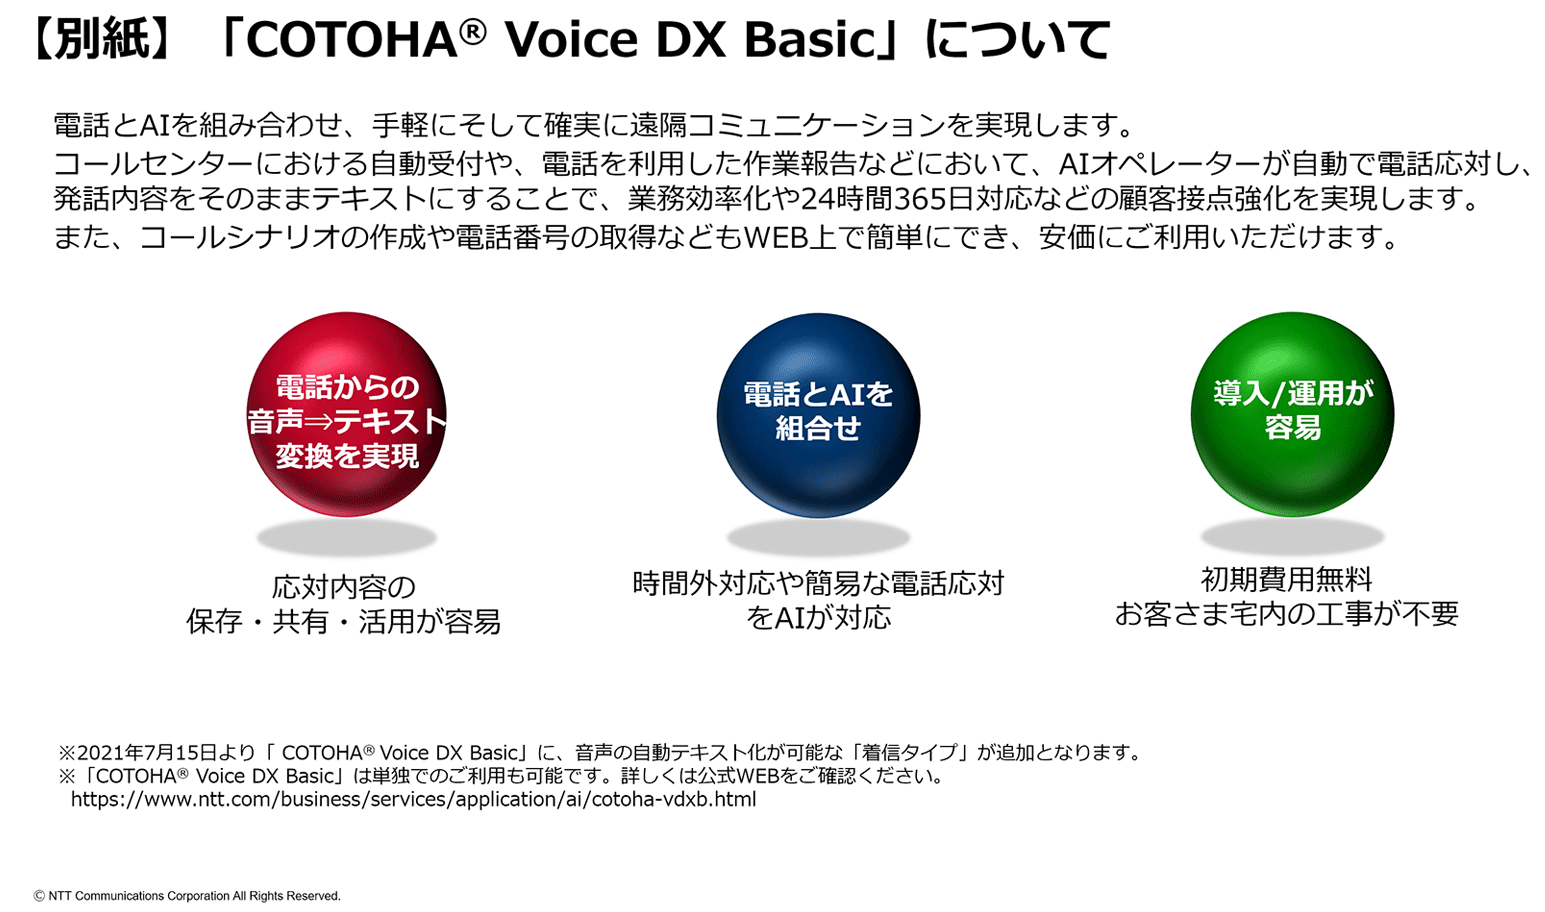 【別紙】「COTOHA<sup>®</sup> Voice DX Basic」について